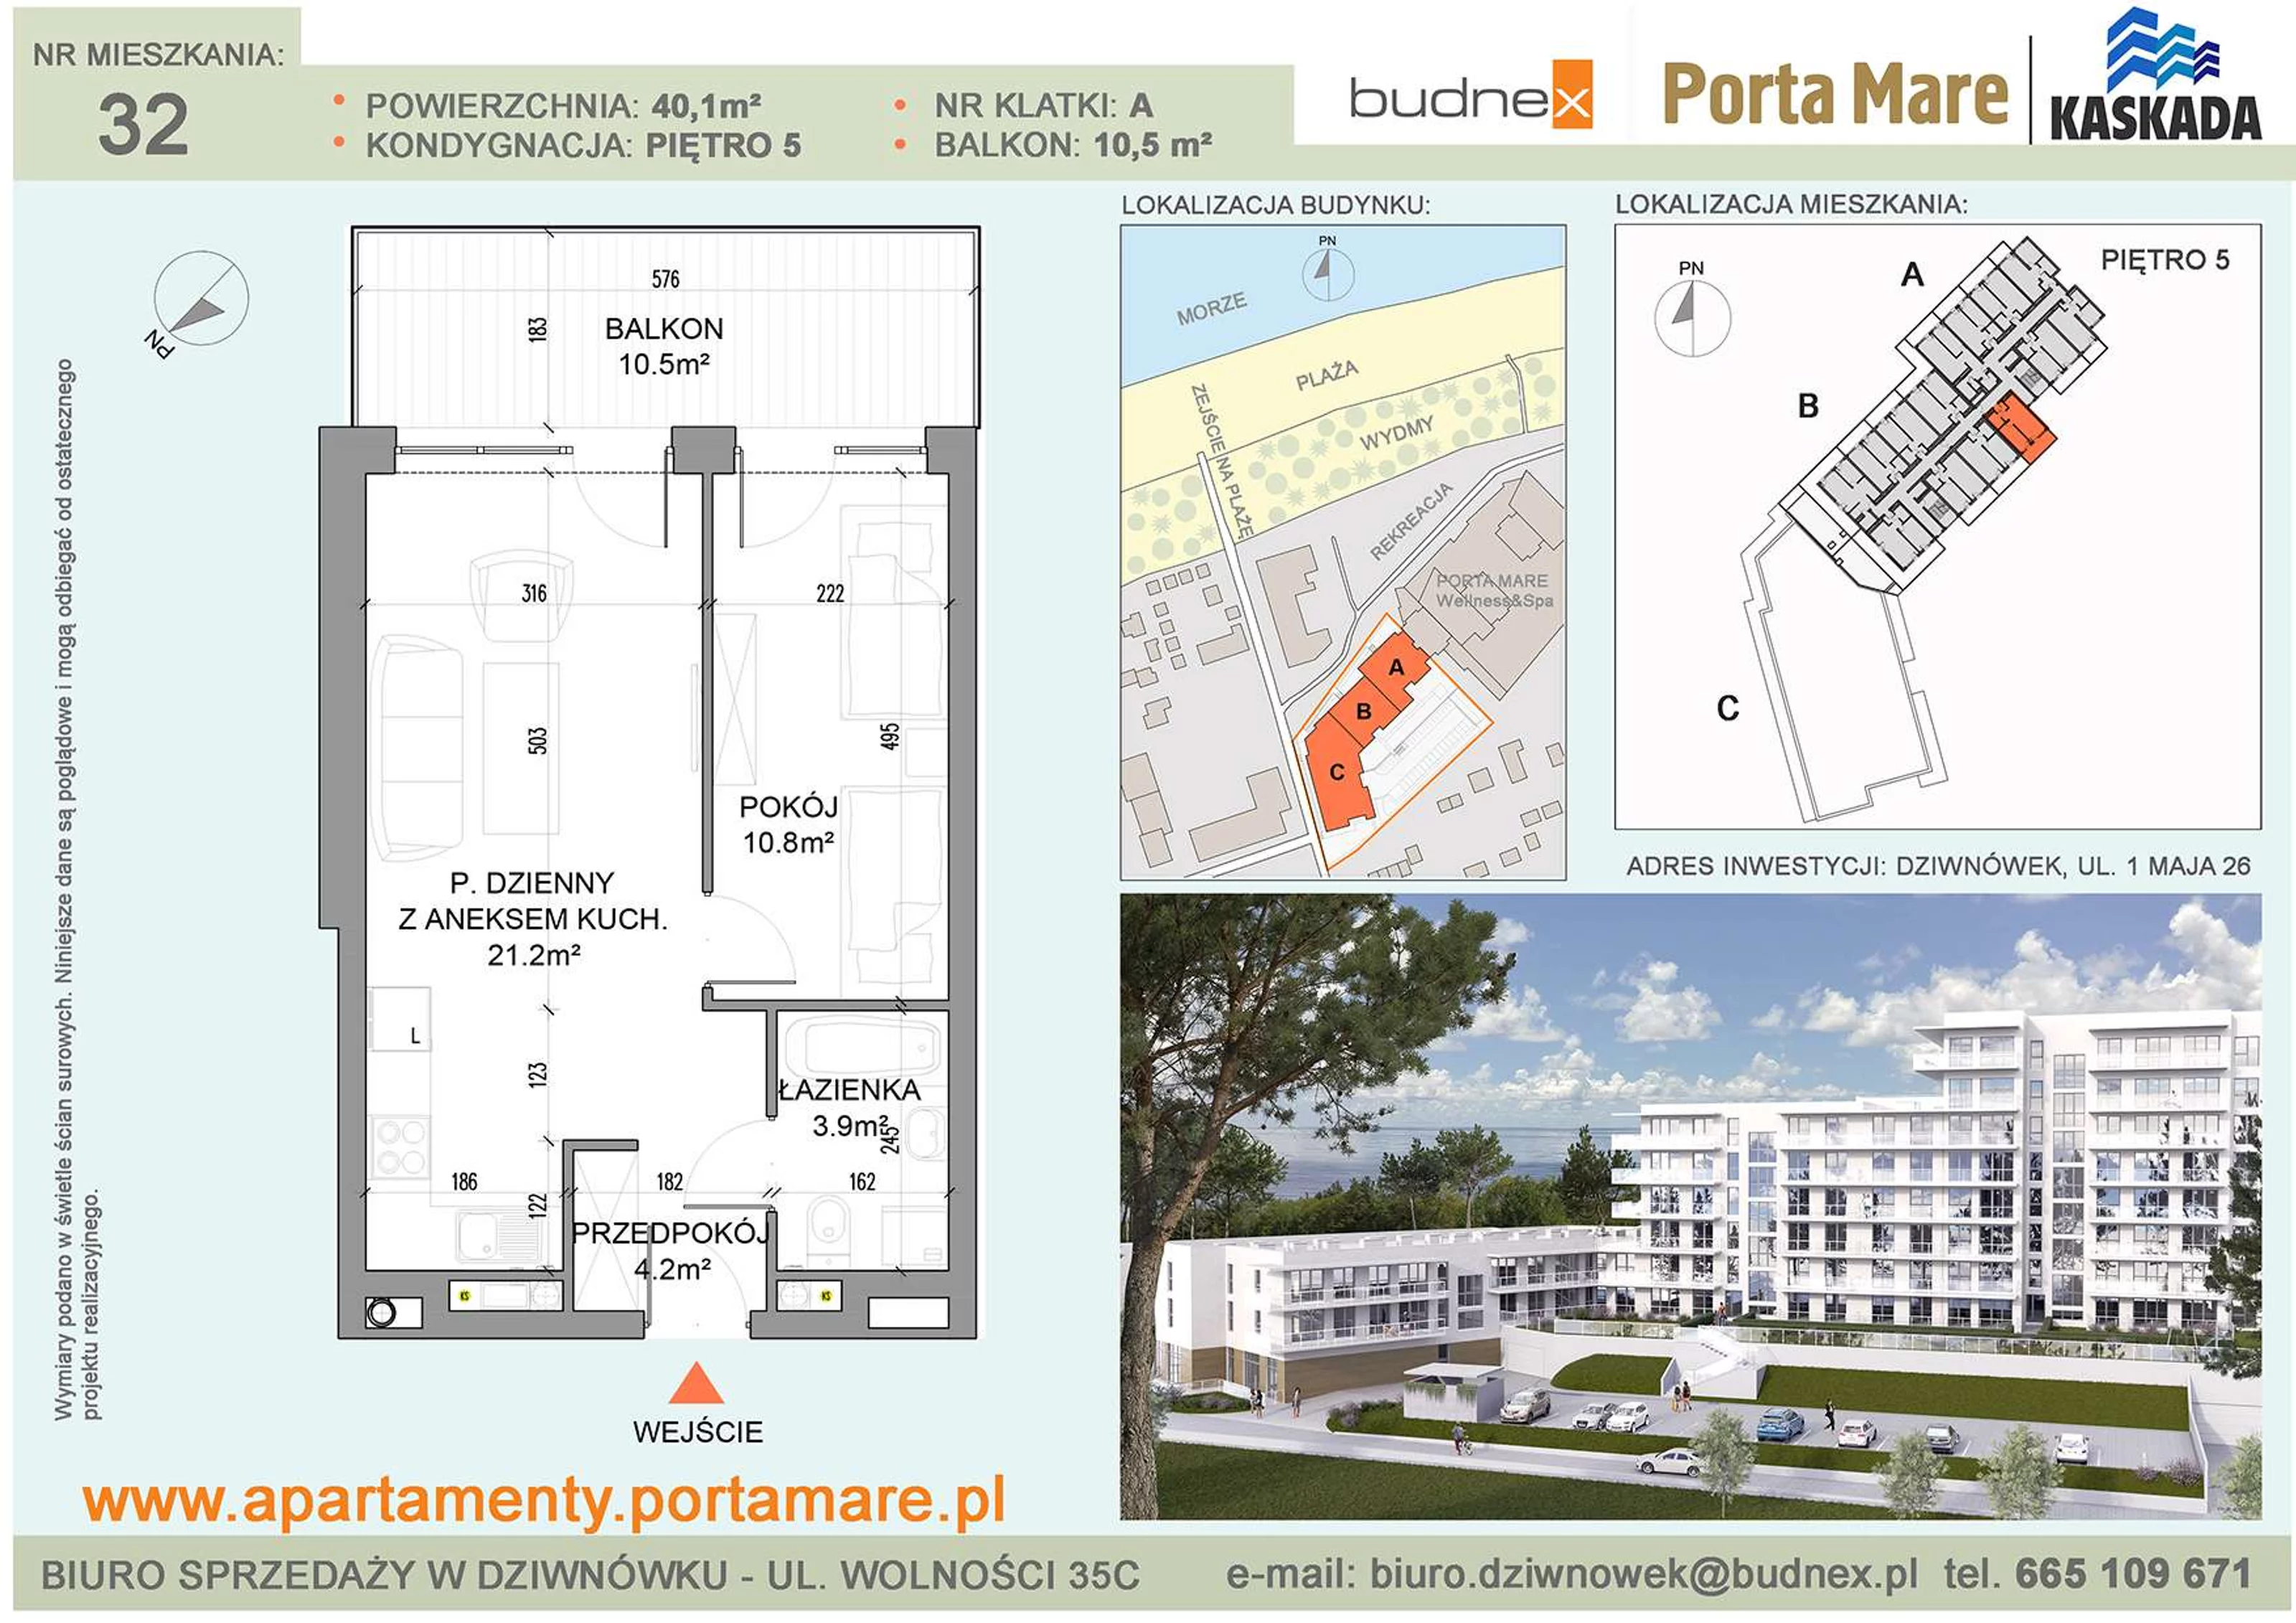 Apartament 40,10 m², piętro 5, oferta nr A/M32, Porta Mare Kaskada, Dziwnówek, ul. 1 Maja 26